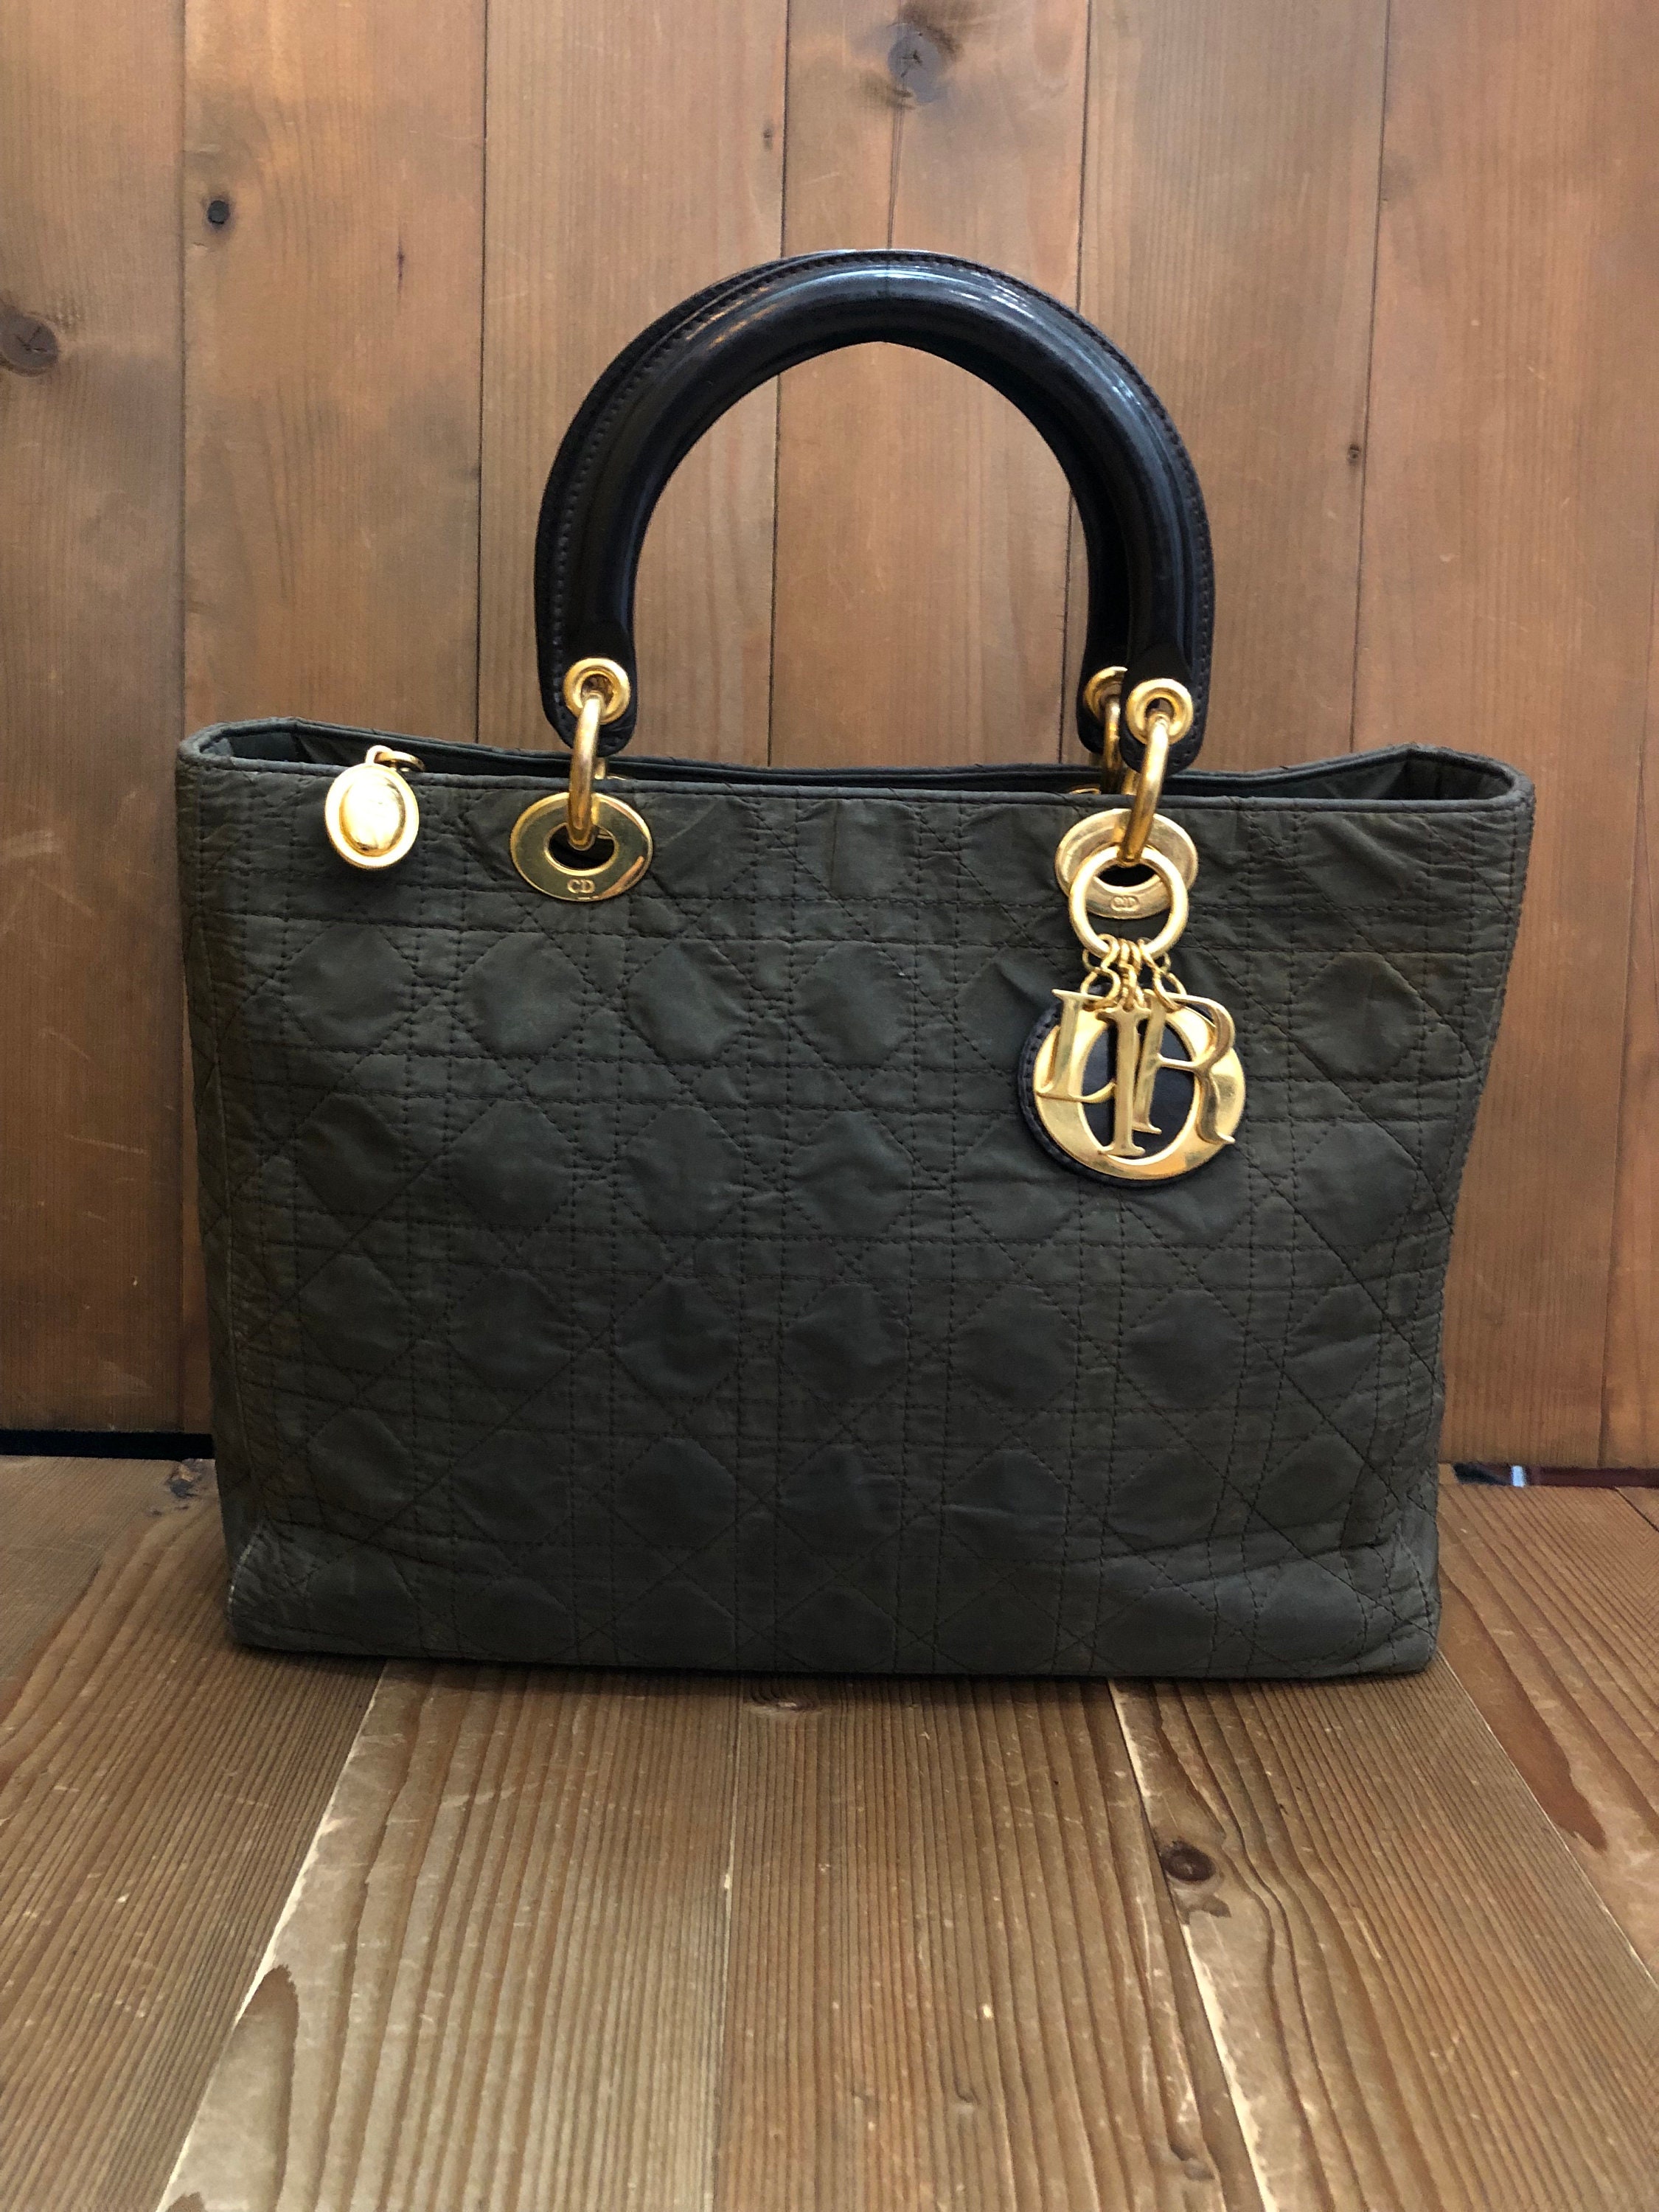 Authentic Dior Bag 